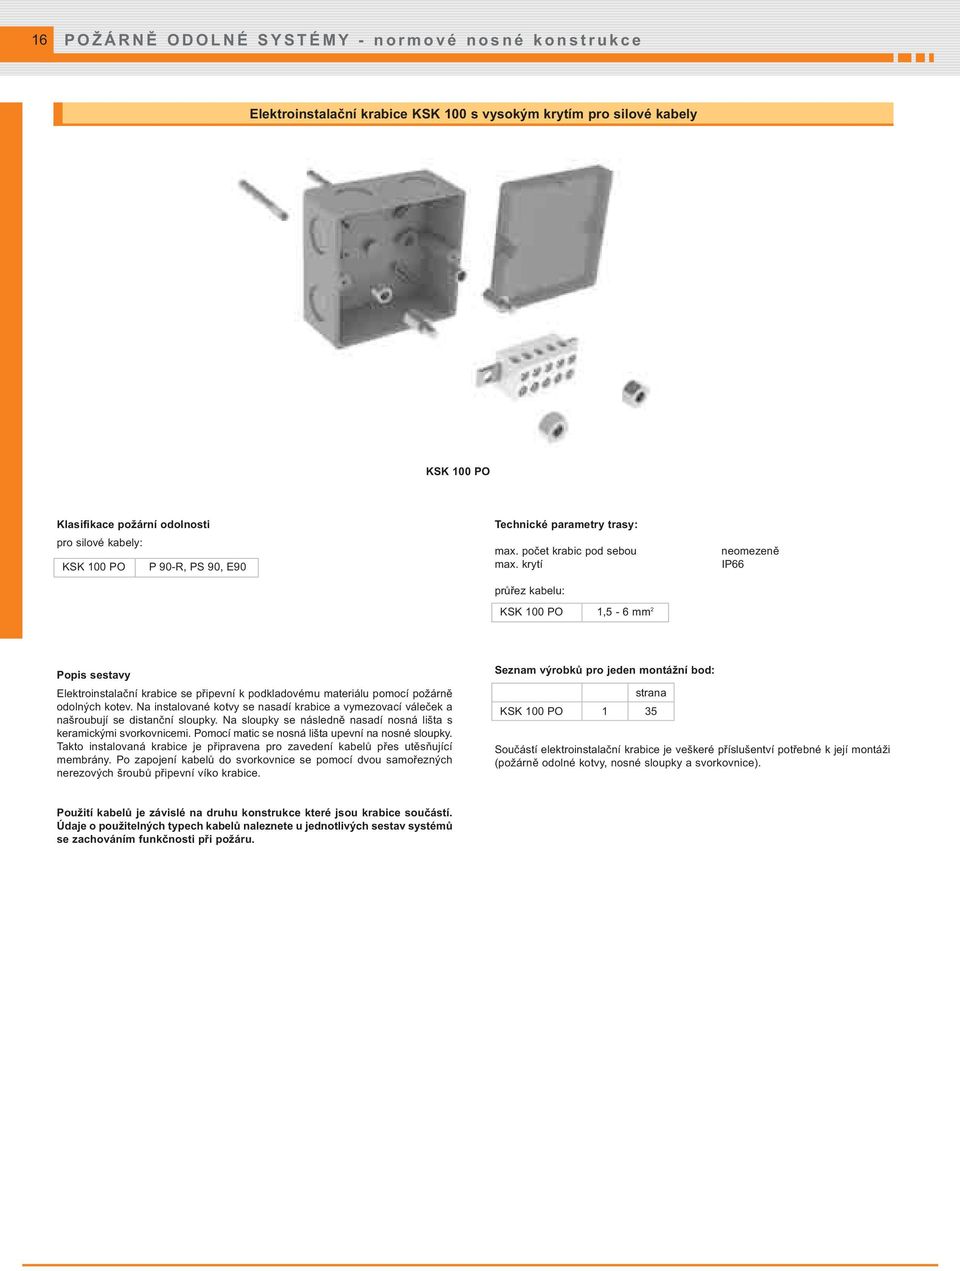 krytí průřez kabelu: KSK 100 PO 1,5-6 mm 2 neomezeně IP66 Popis sestavy Elektroinstalační krabice se připevní k podkladovému materiálu pomocí požárně odolných kotev.